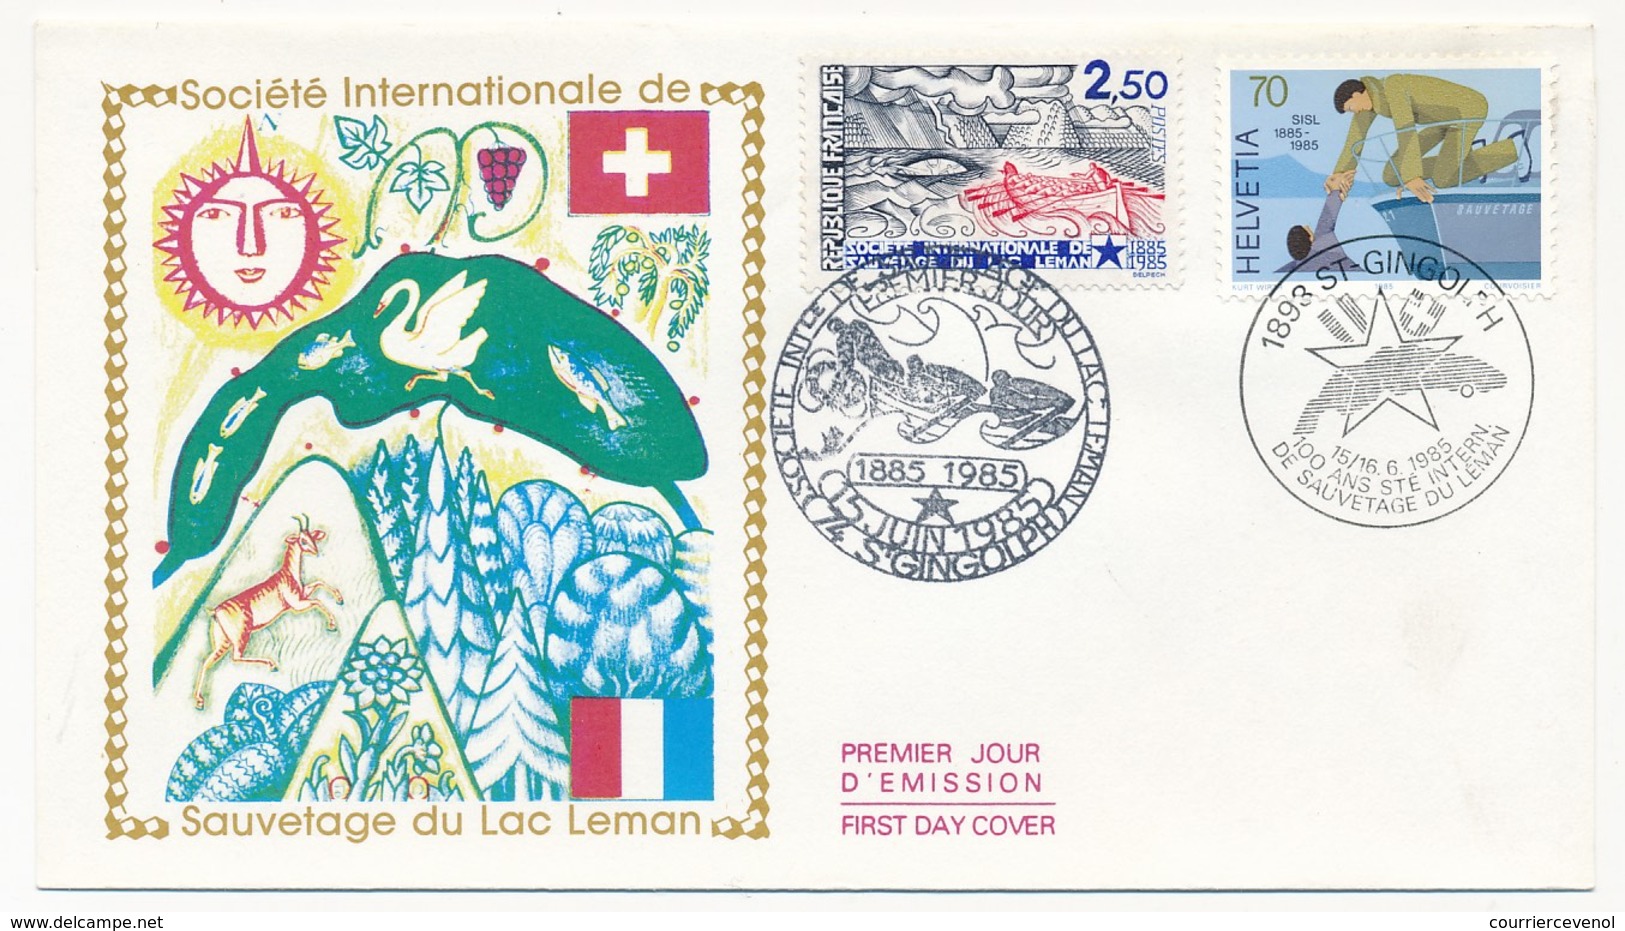 2 Enveloppes FDC Emission Commune France/Suisse - Société De Sauvetage Du Léman - 1985 - Emissions Communes